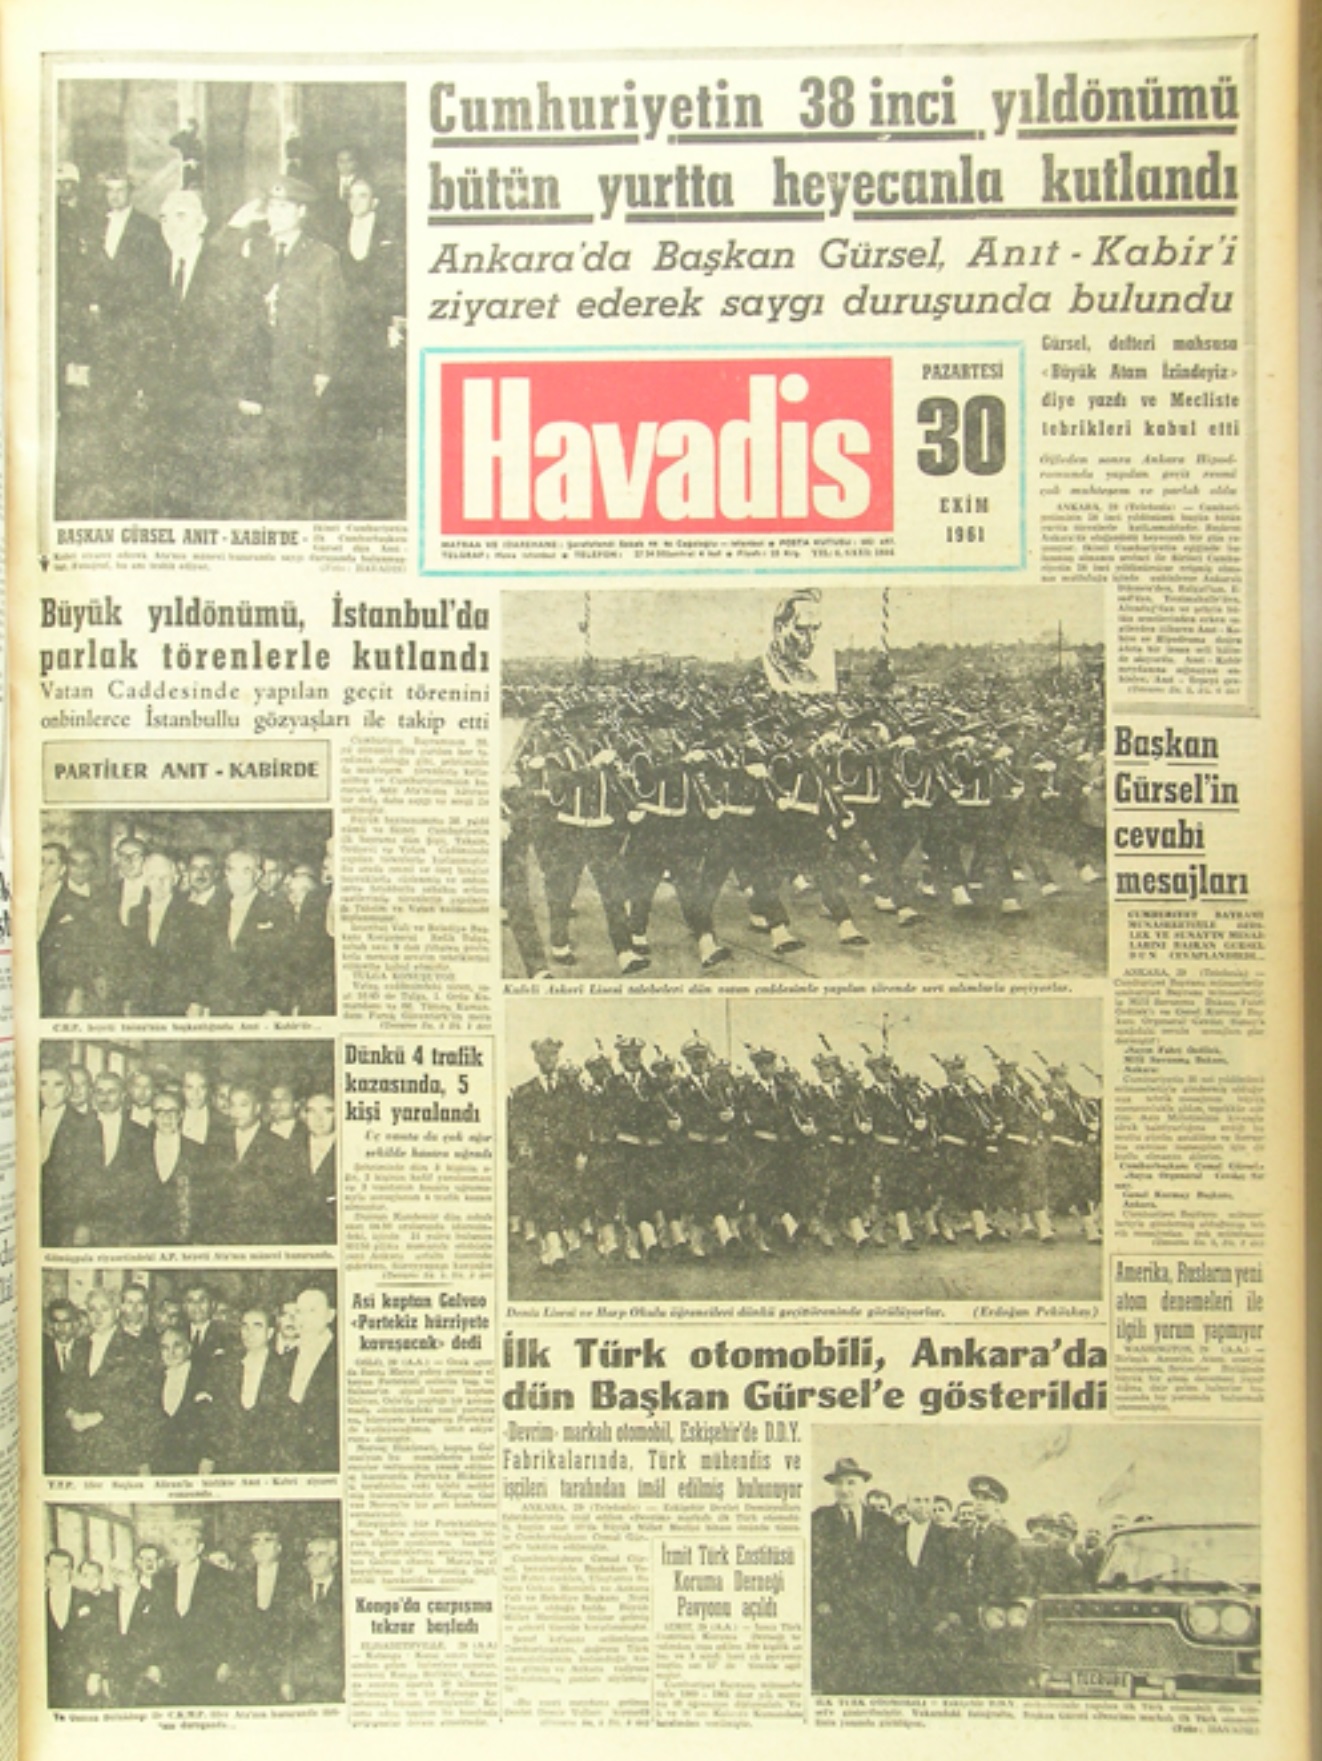 Havadis Gazetesinin 30 Ekim 1961 tarihli sayısında Devrim Arabalarının tanıtımı haberleştirilmişti